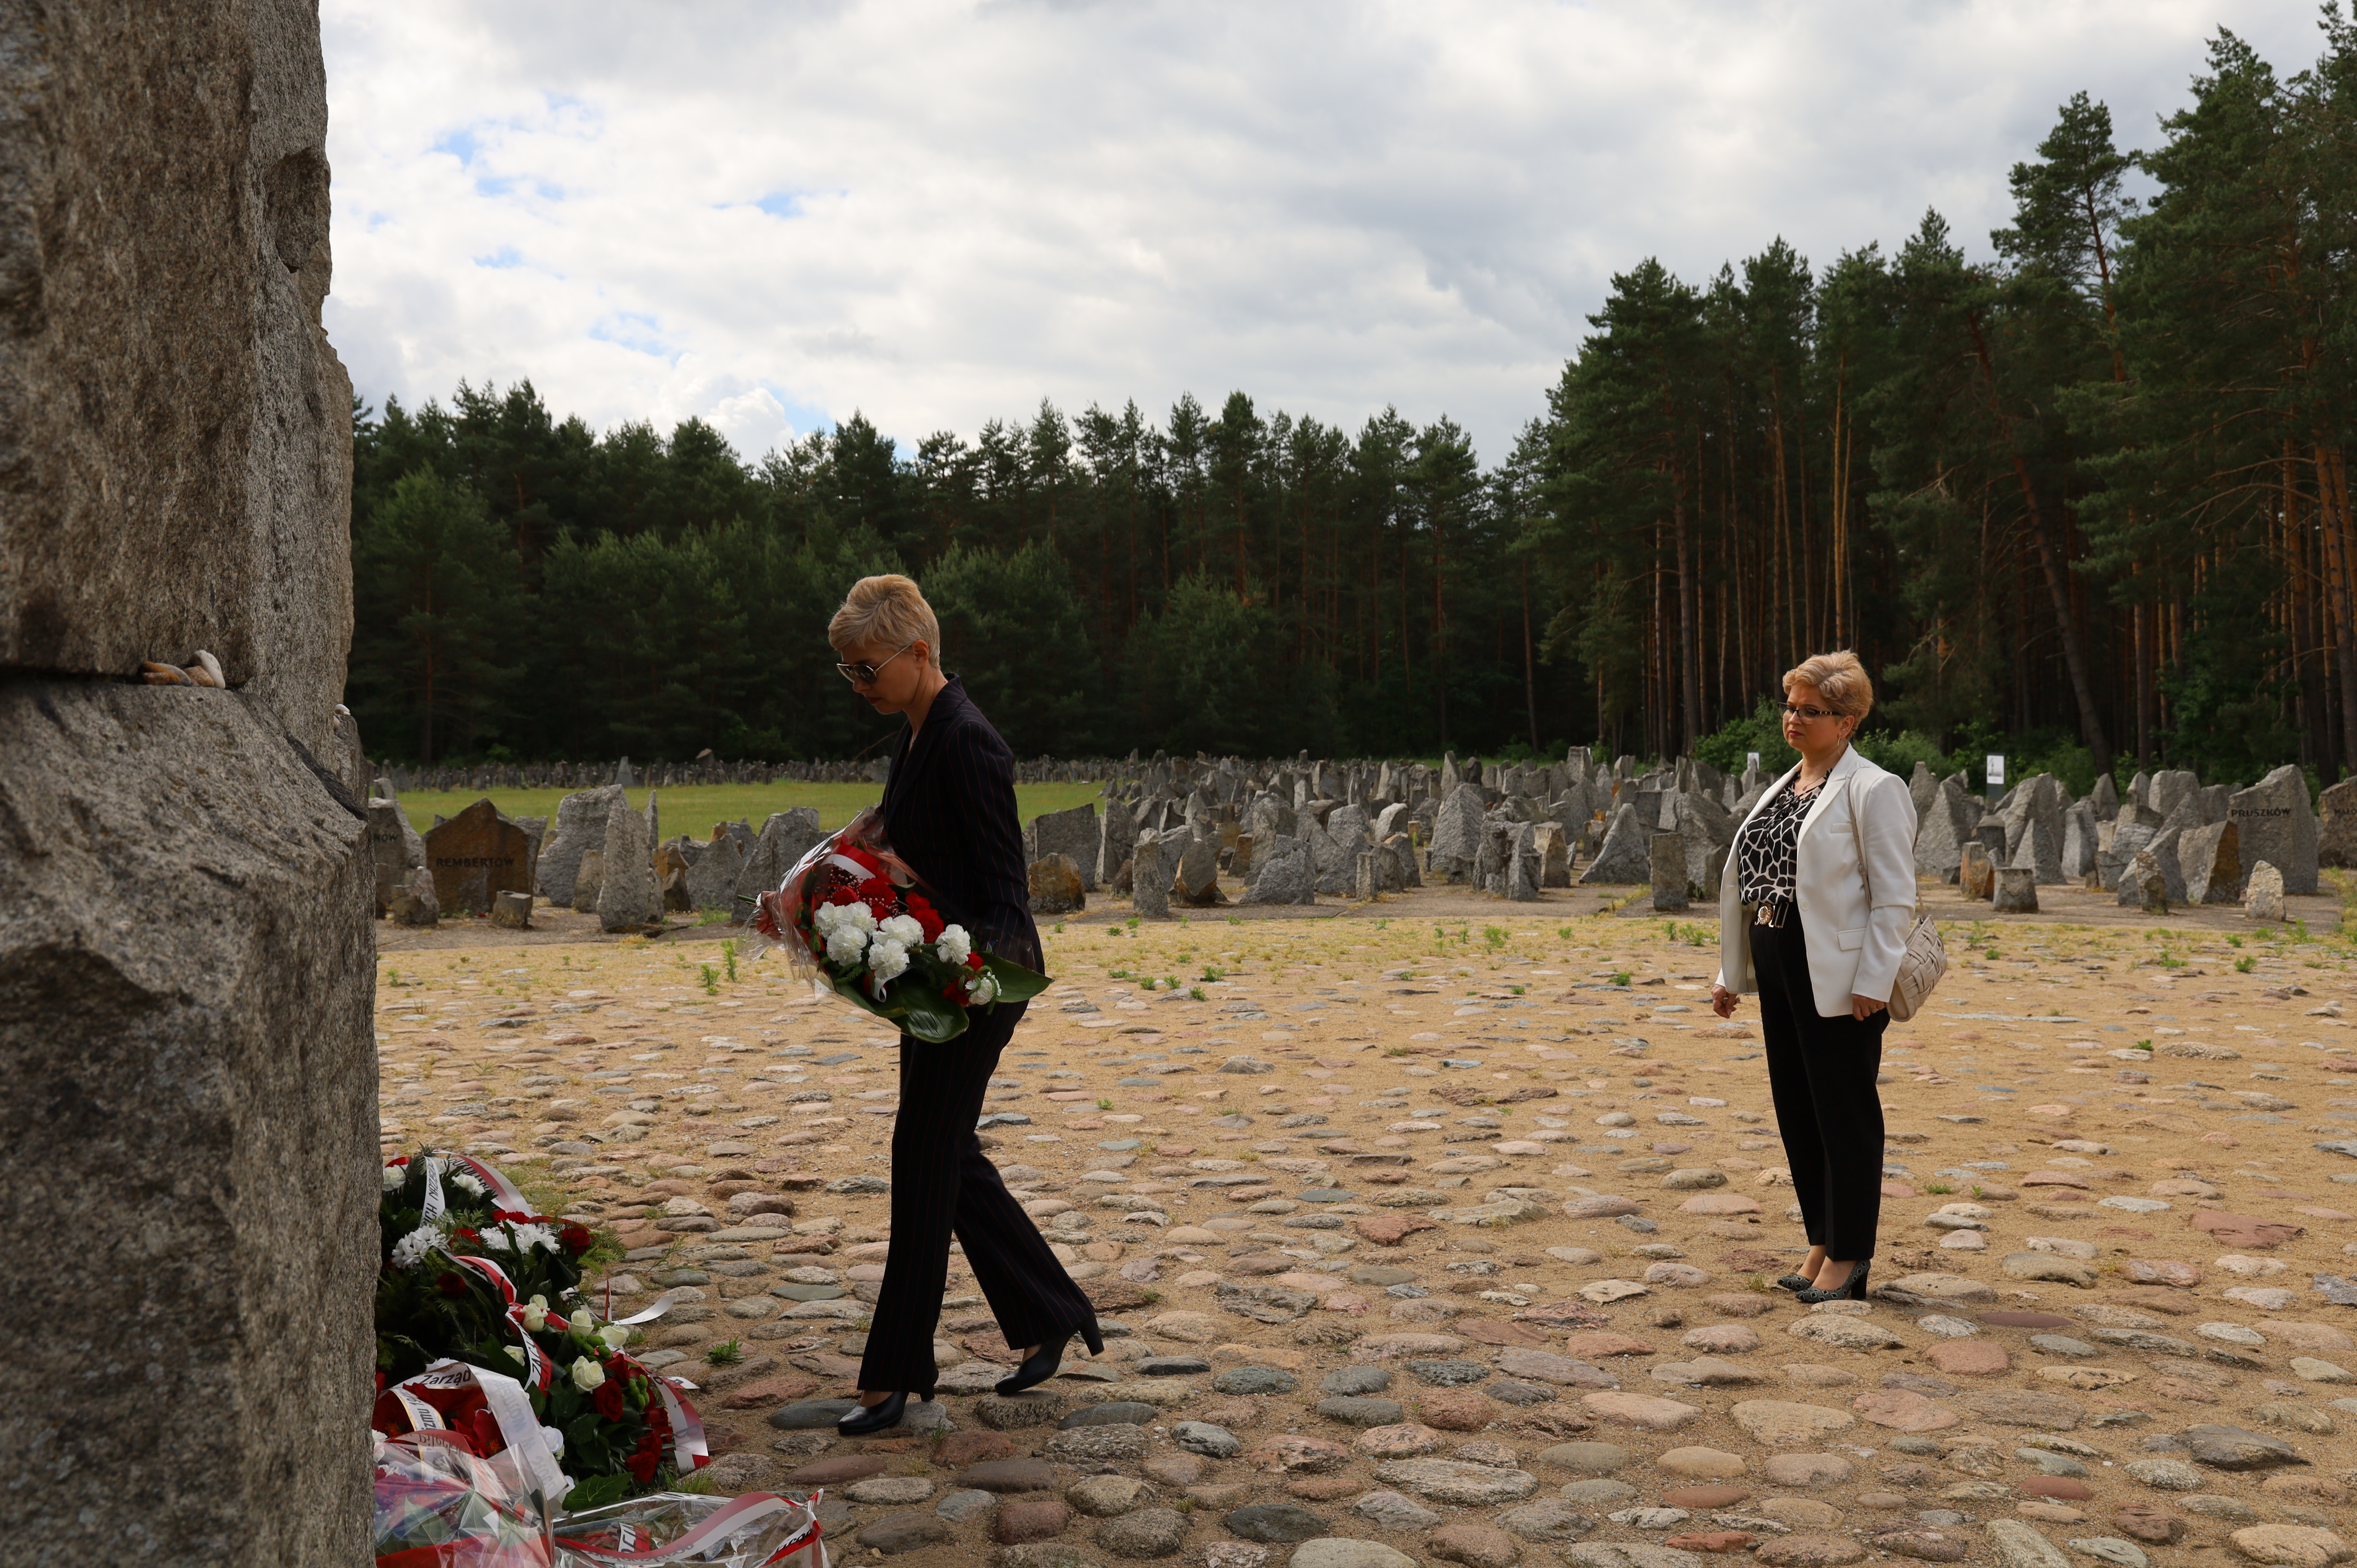 Pod pomnikiem w Muzeum Treblinka w czasie uroczystości składają kwiaty Dyrektor Dorota Ambroziak i Wioletta Ogonowska jako reprezentacja Urzędu Miasta Ostrów Mazowiecka 